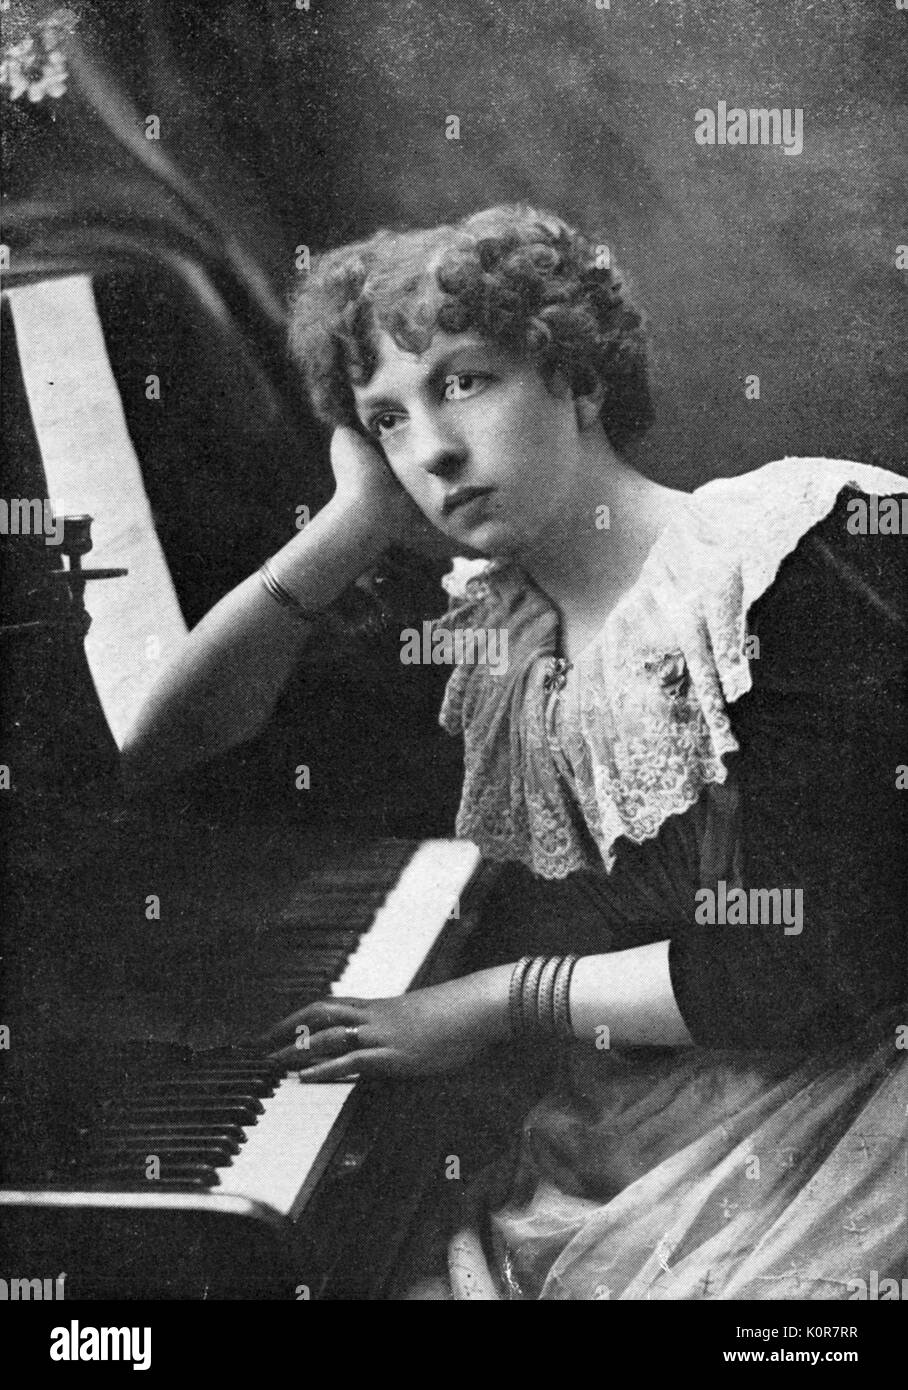 Pianista donna immagini e fotografie stock ad alta risoluzione - Alamy